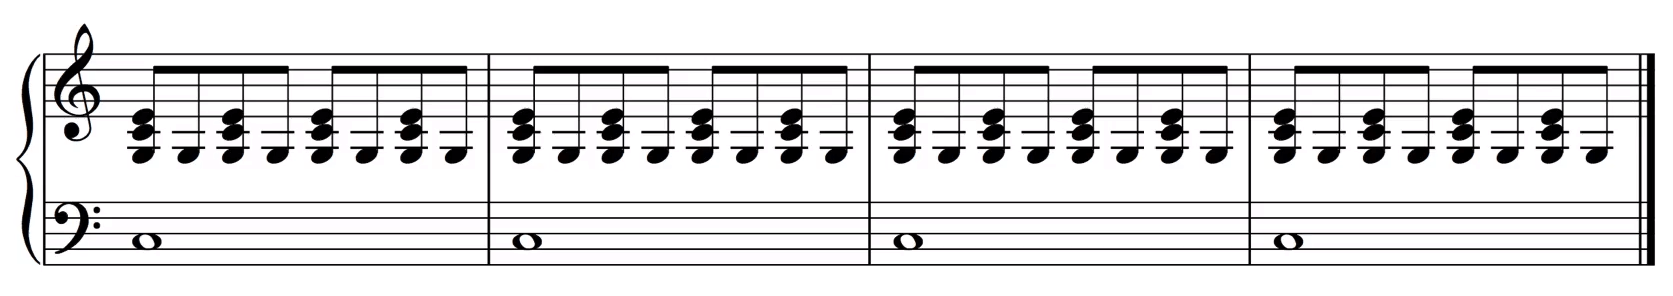 每一拍的后半拍再弹一次右手最低音